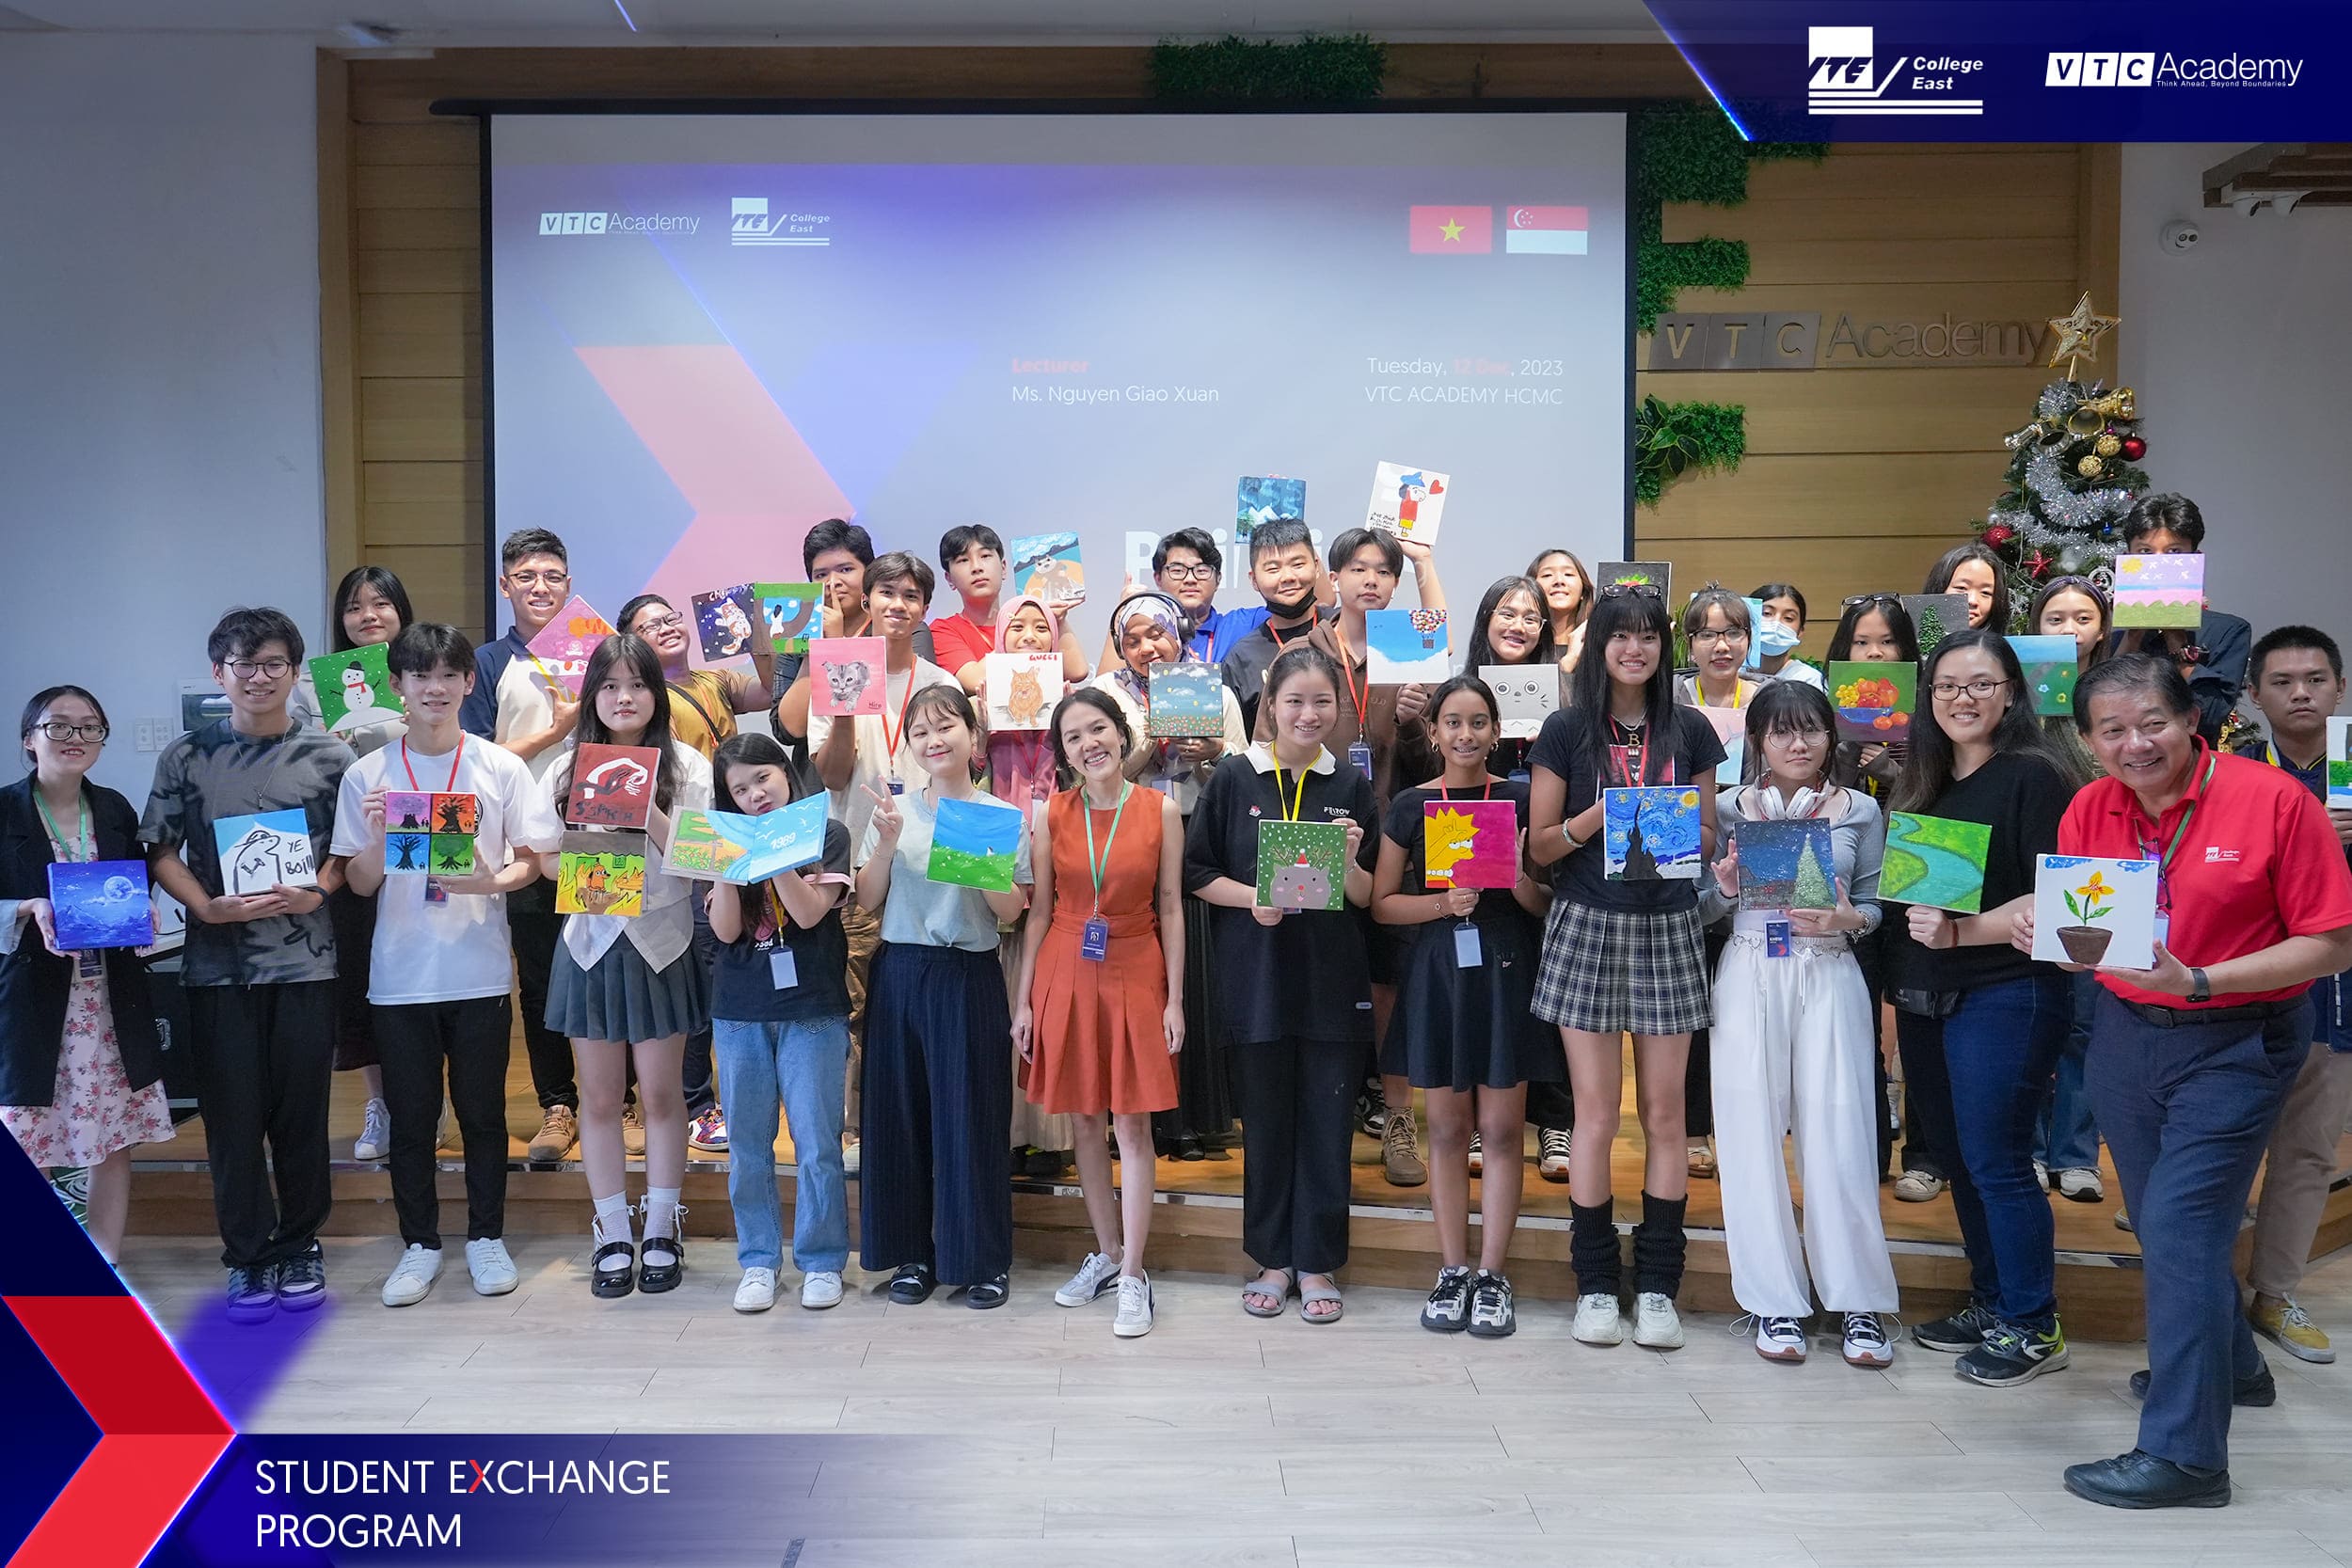 Hành trình gắn kết: trường ITE College East – Singapore trao đổi học tập tại VTC Academy trong 02 tuần